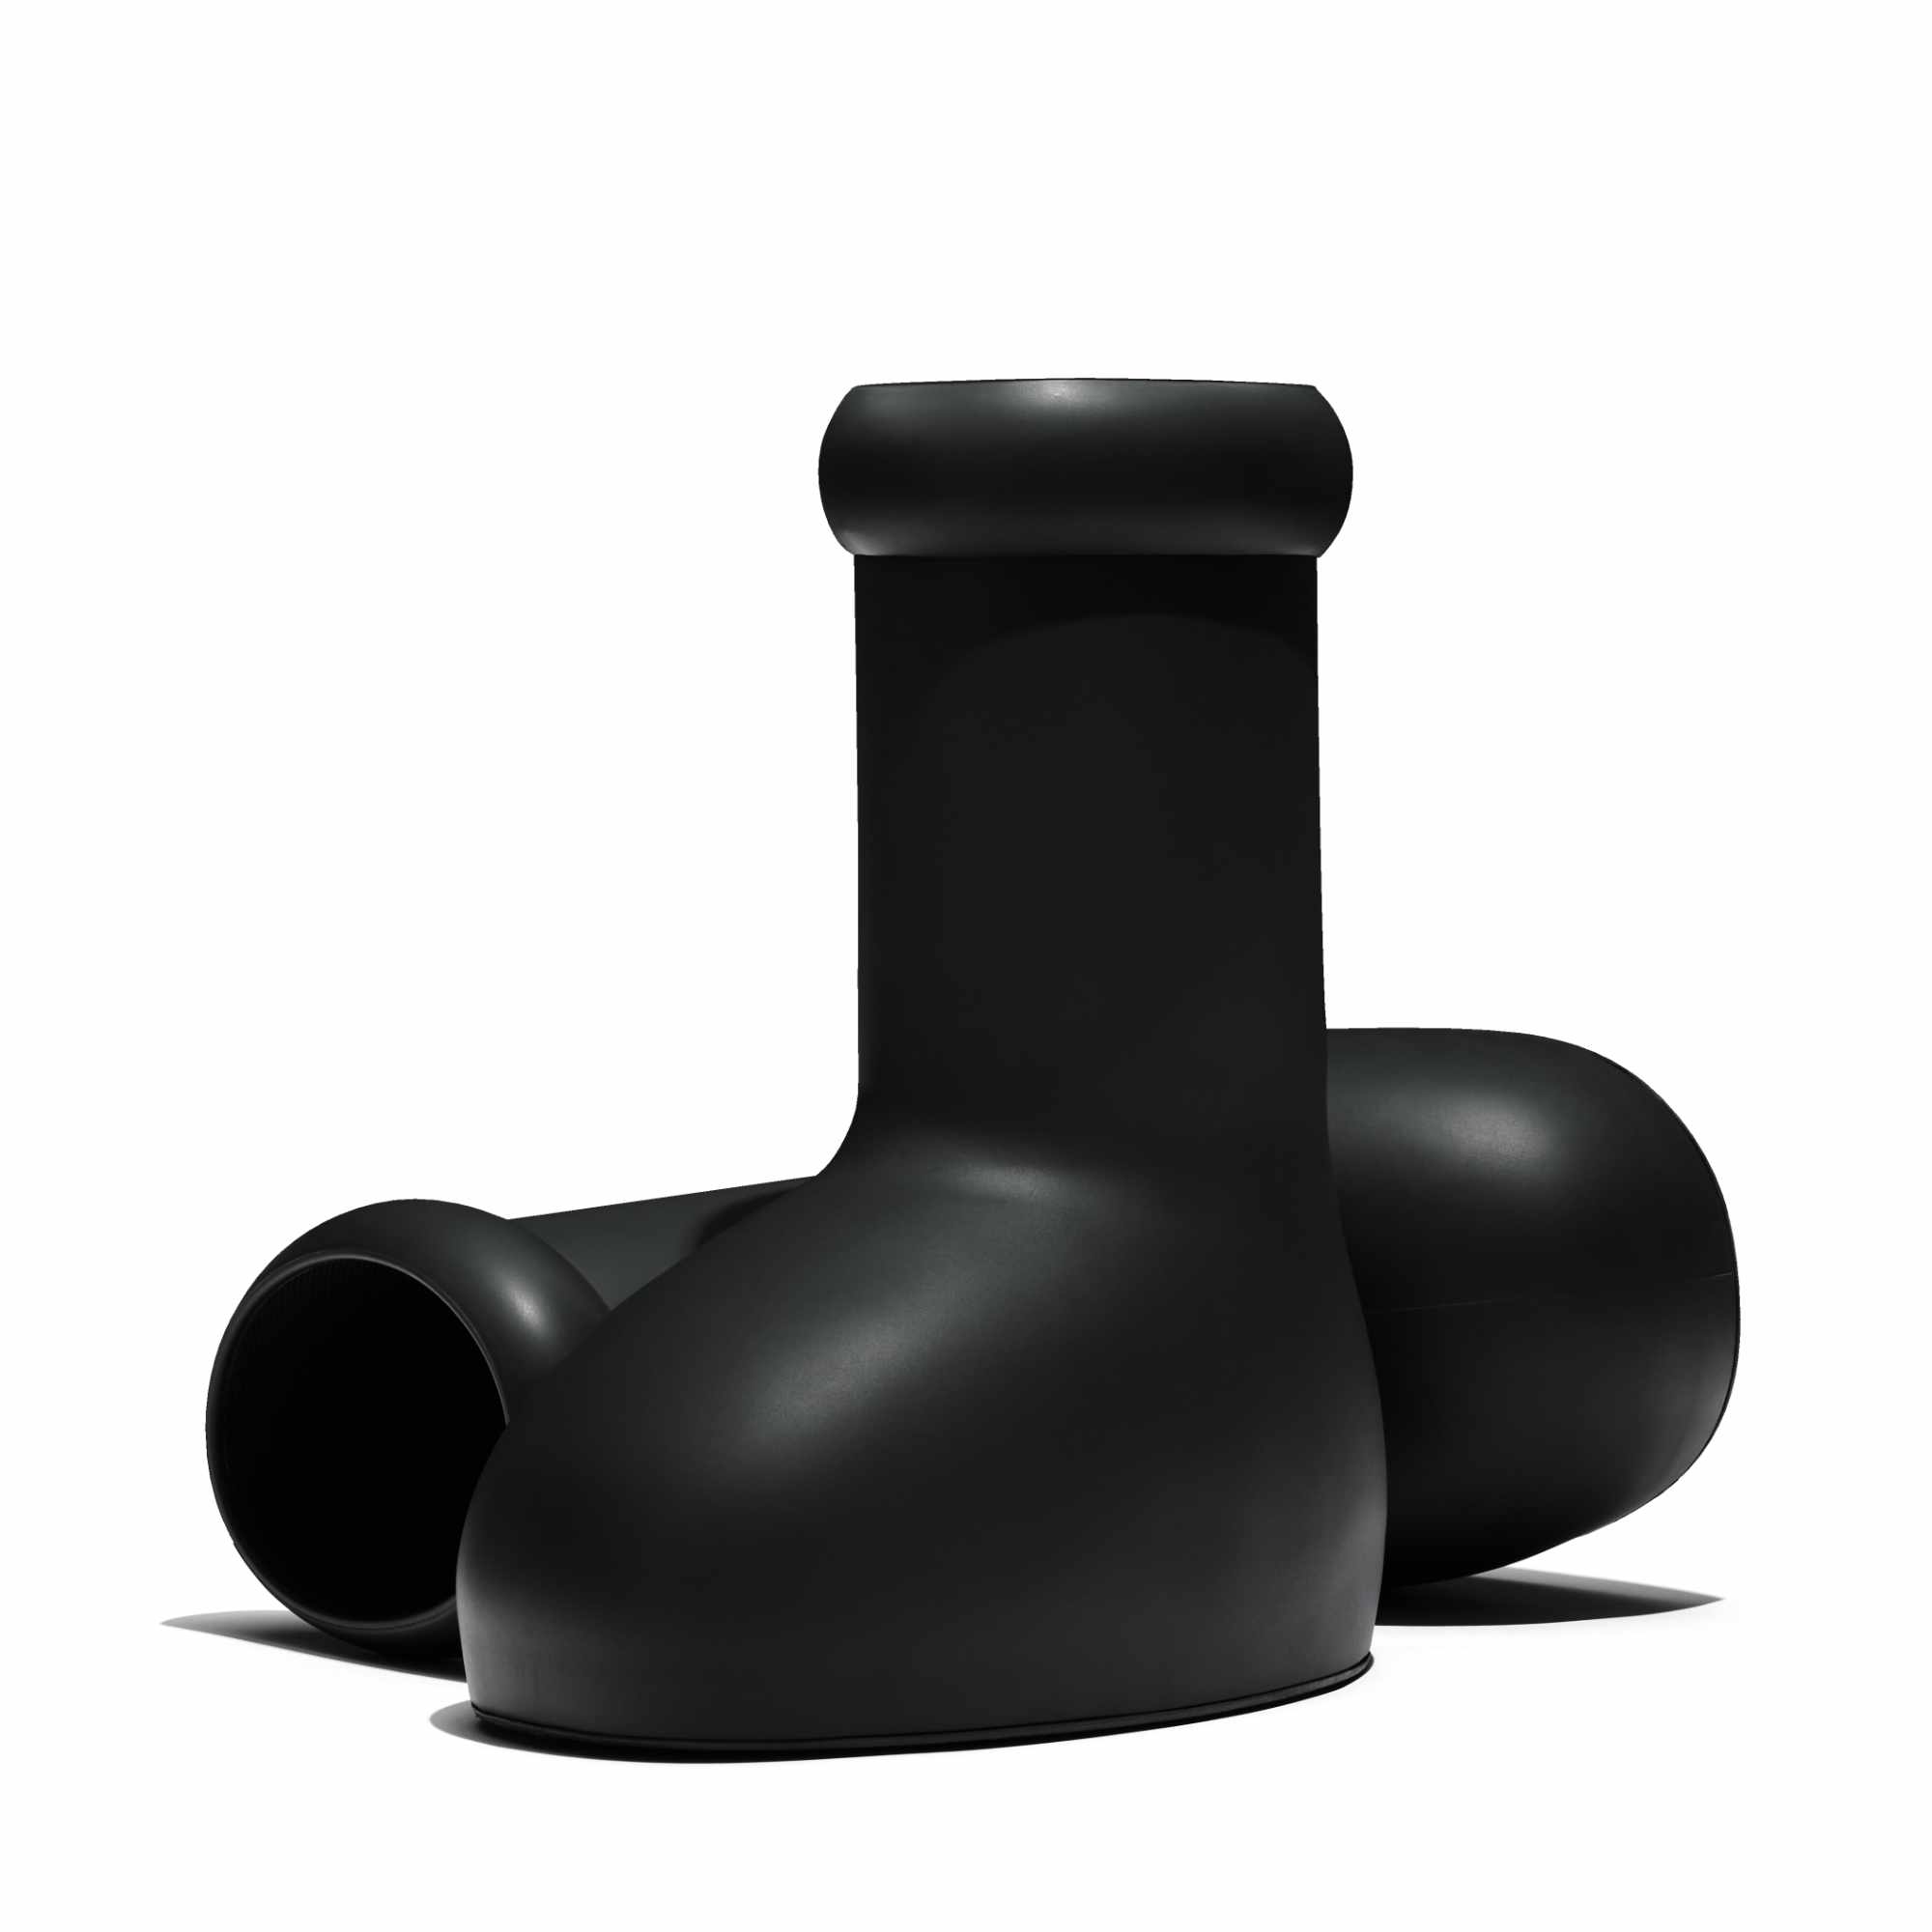 MSCHF's Big Black Boot, as worn by Mitch Modes